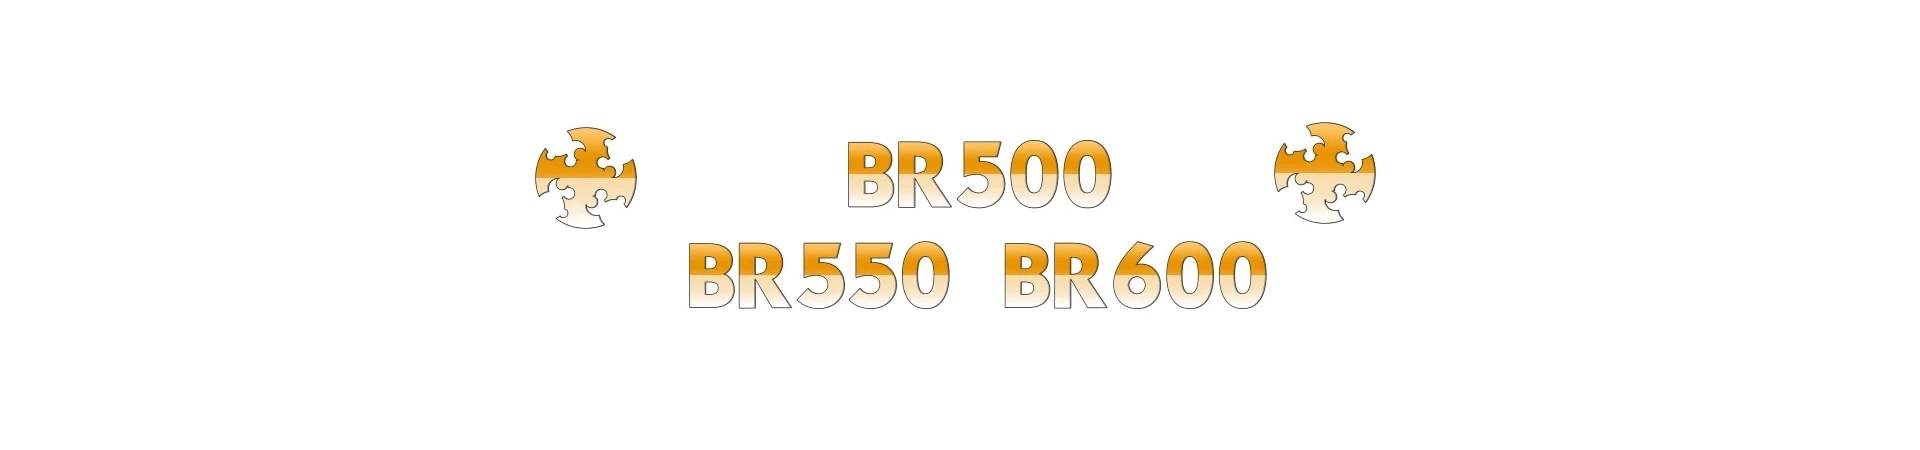 REPUESTOS para Sopladora STIHL BR500 BR550 BR600